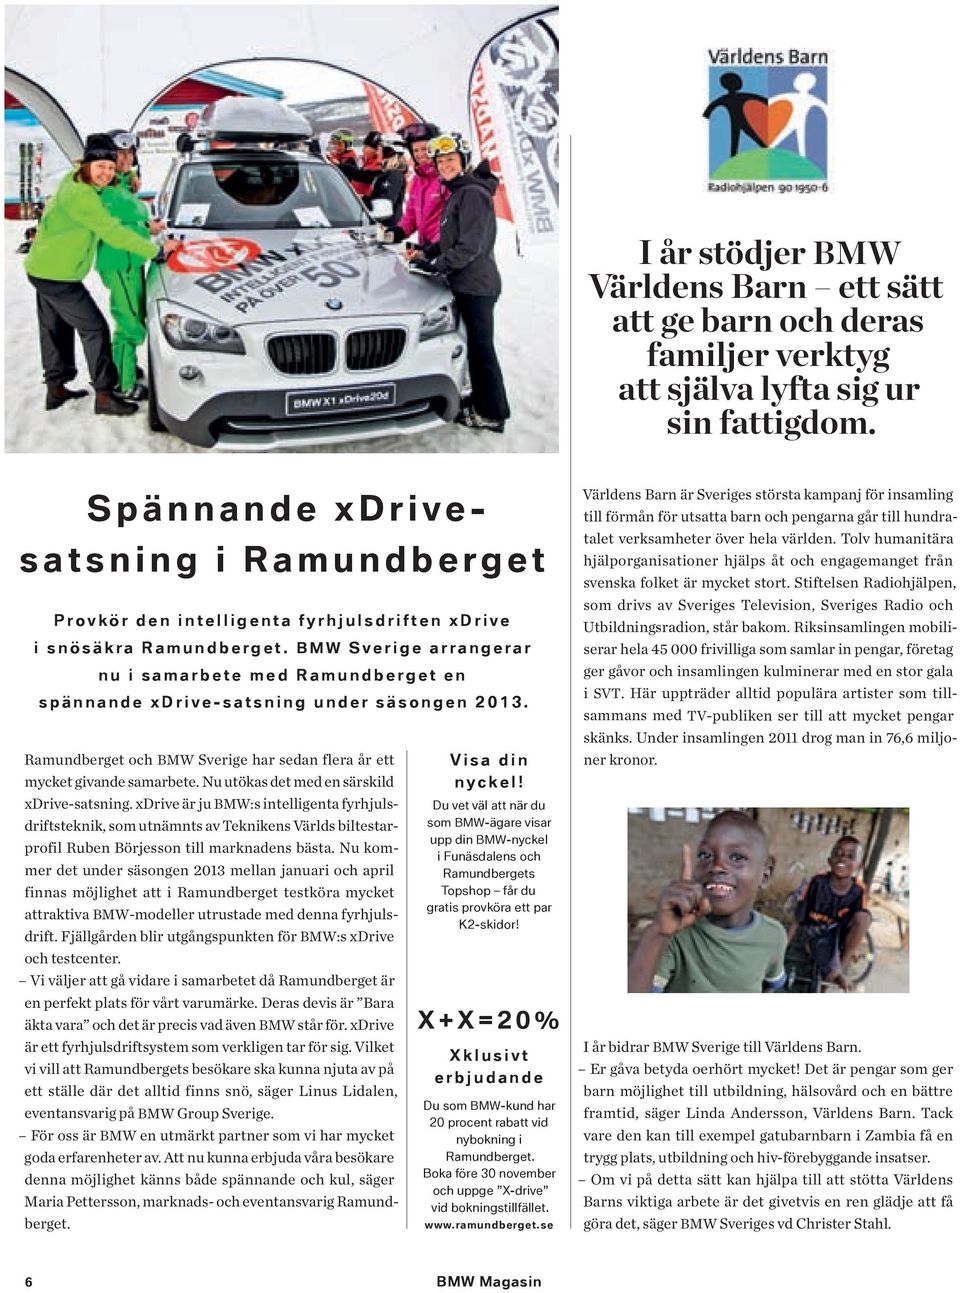 BMW Sverige arrangerar nu i samarbete med Ramundberget en spännande xdrive-satsning under säsongen 2013. Ramundberget och BMW Sverige har sedan flera år ett mycket givande samarbete.